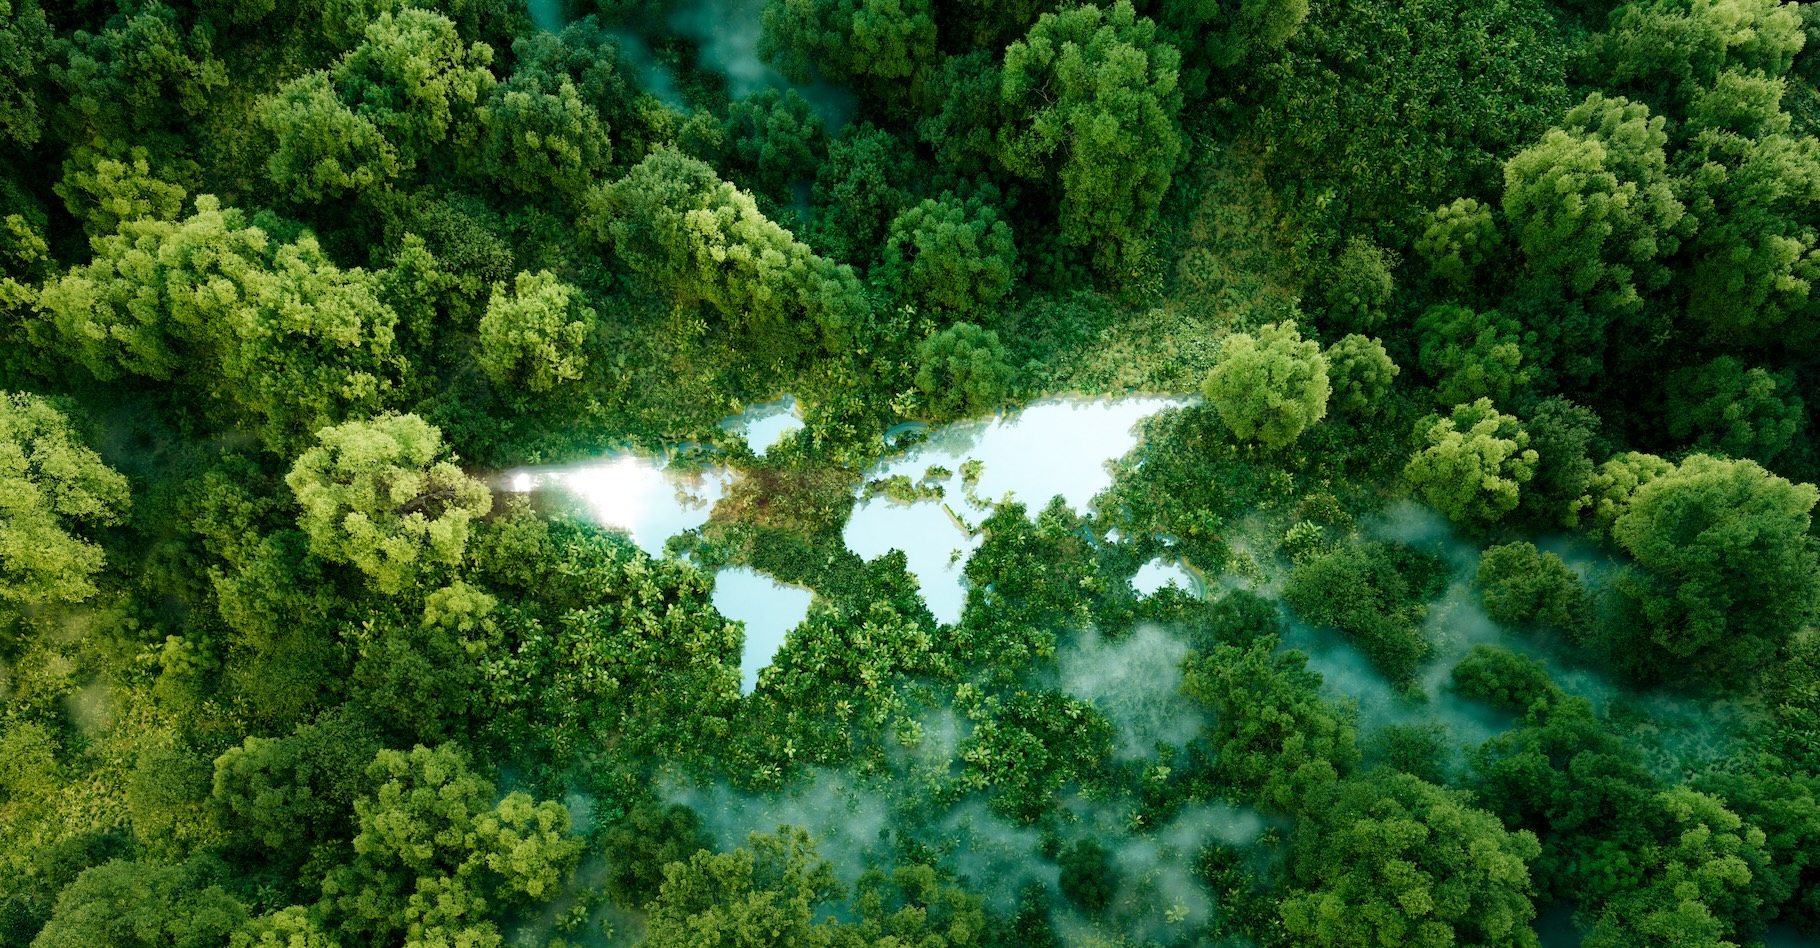 Des chercheurs ont analysé la capacité de la forêt à éliminer du dioxyde de carbone (CO2) de notre atmosphère. Malgré des menaces régionales, les forêts du monde continuent d’être une arme puissante dans la lutte contre le changement climatique. © malp, Adobe Stock